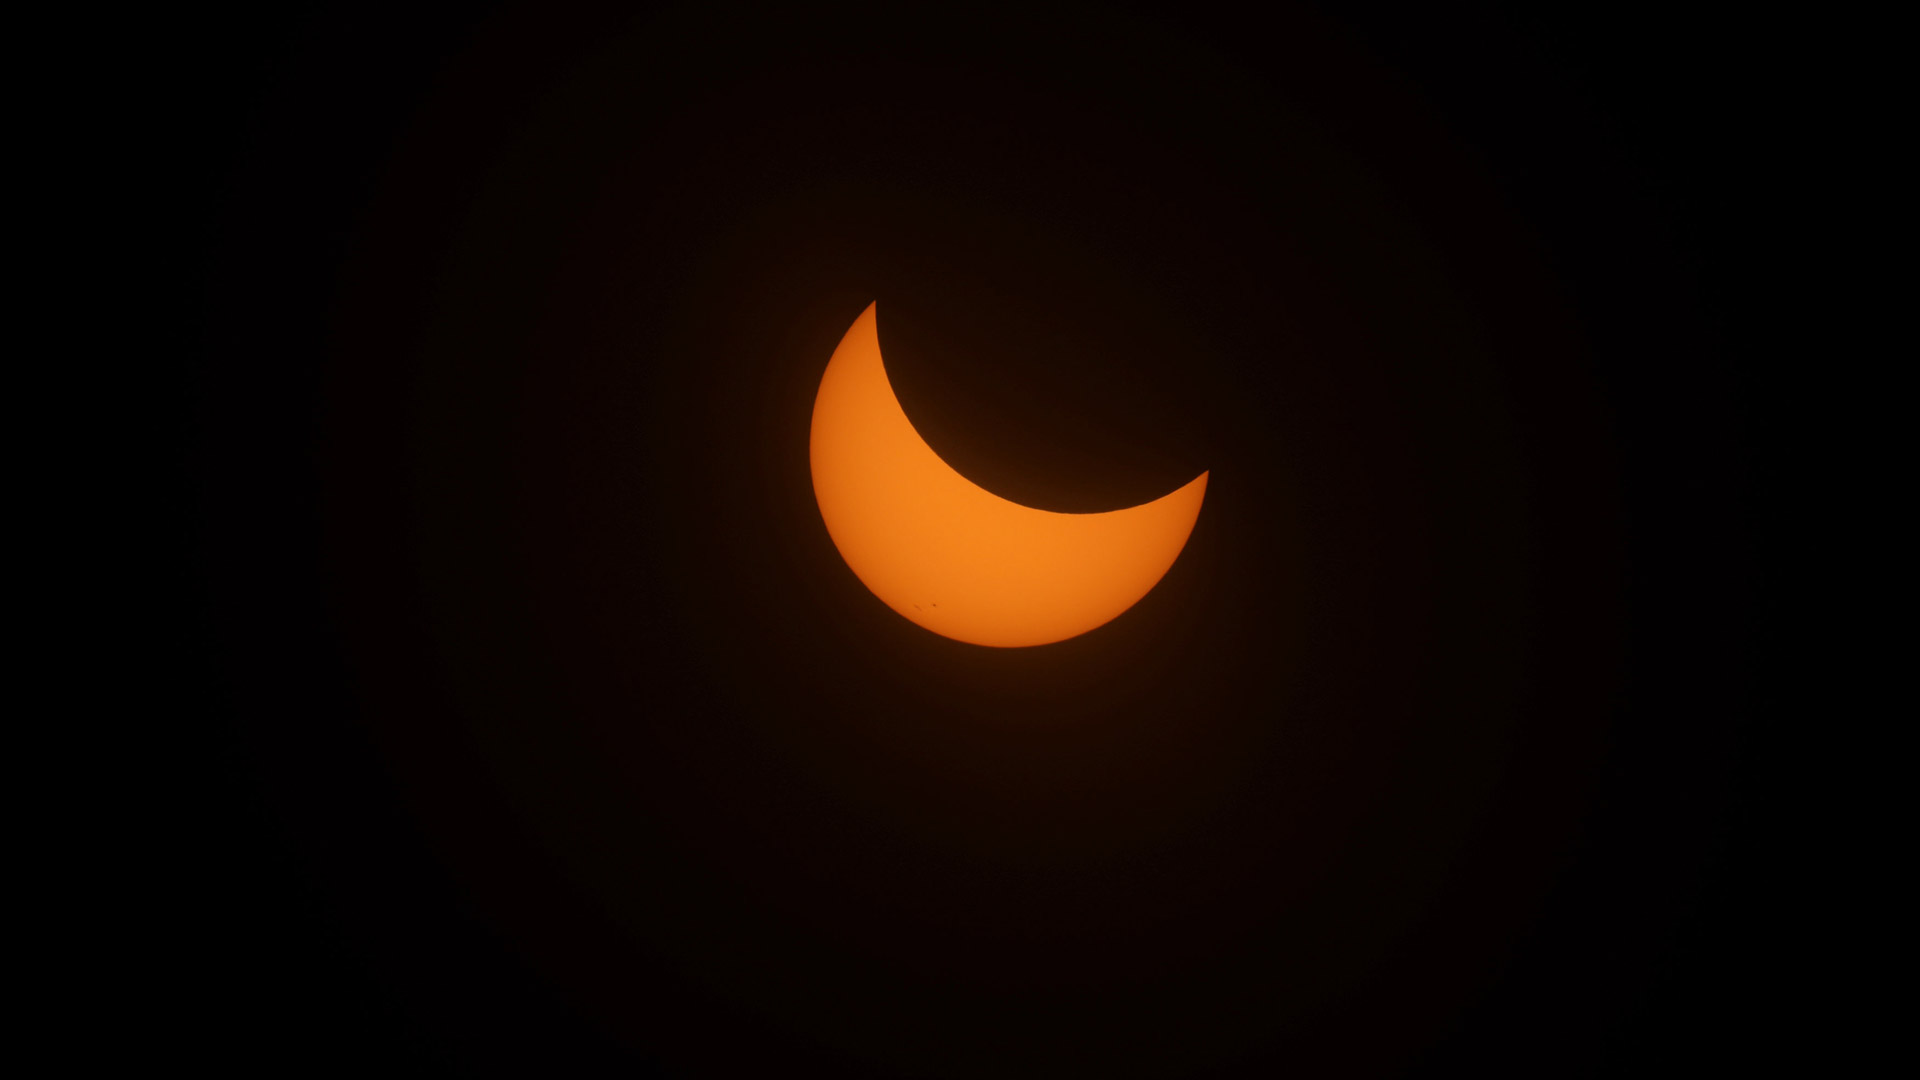 Estas son las mejores imágenes del eclipse solar de 2017 1